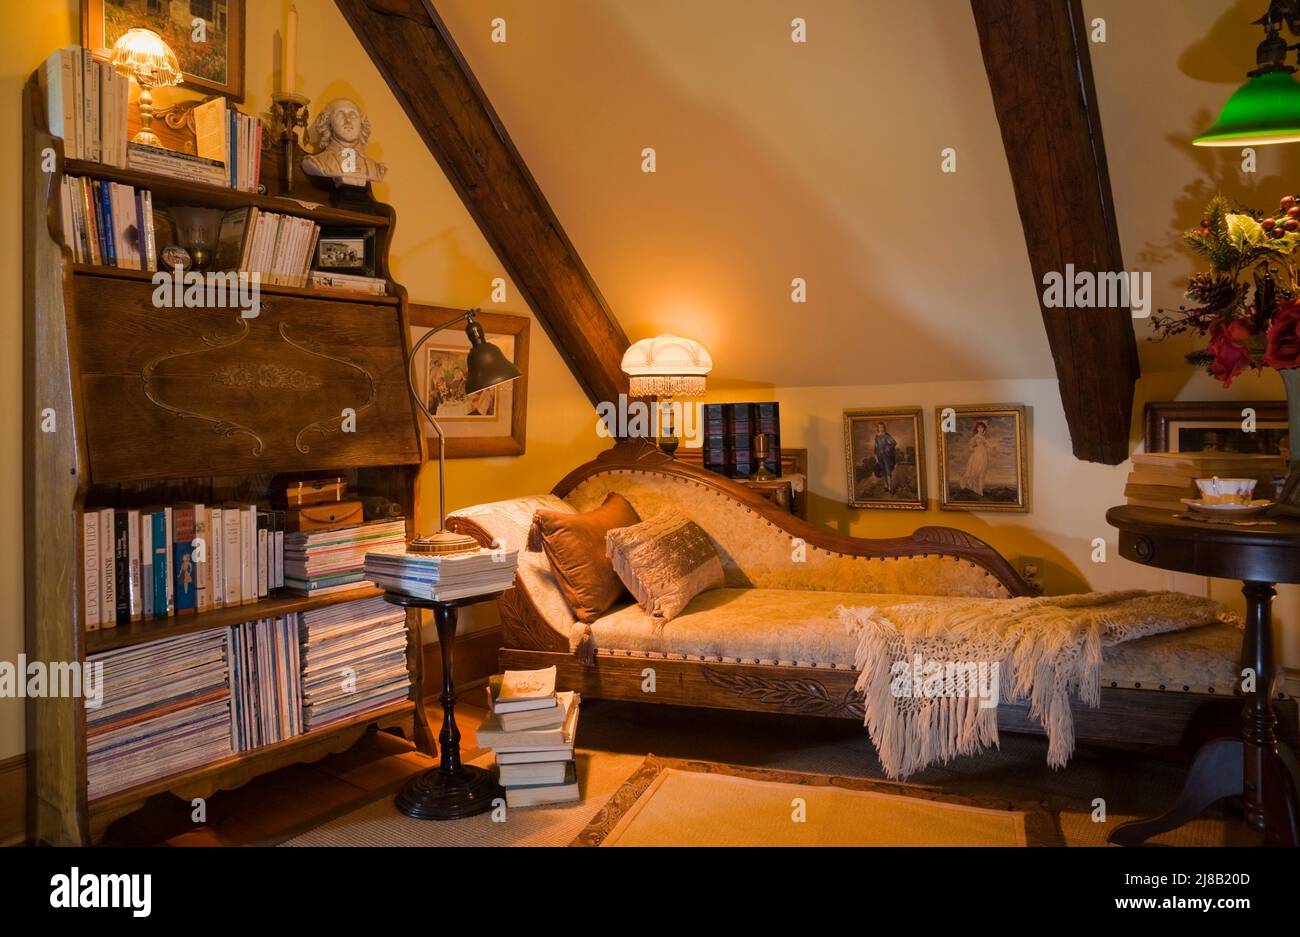 Salle de lecture avec lit de repos et beaucoup de livres à l'intérieur de la maison en rondins de style Cottage datant de 1800s reconstruite. Banque D'Images